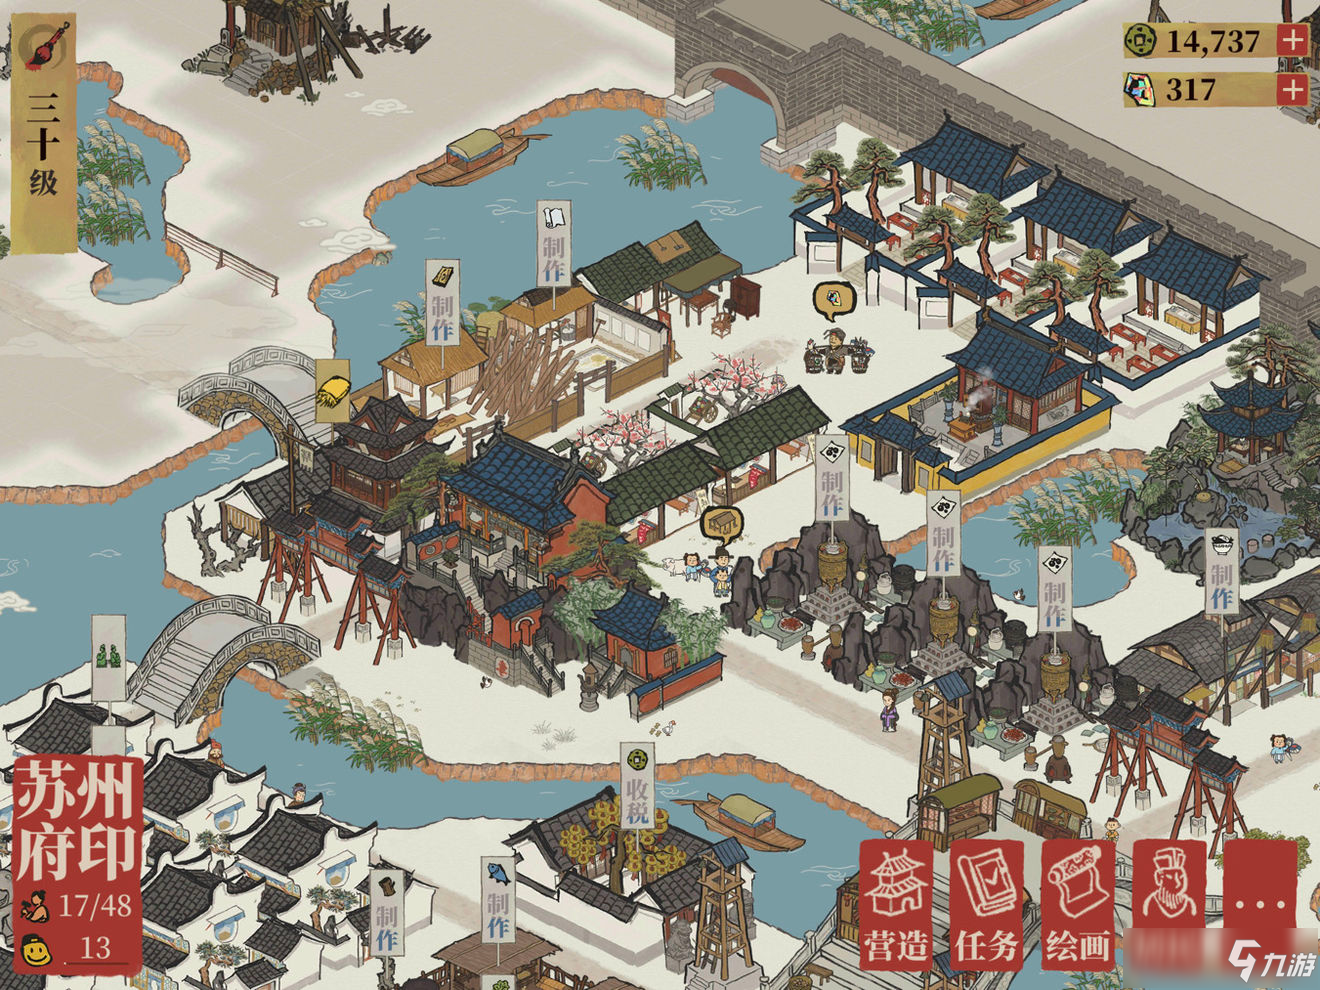 《江南百景图》游戏攻略 游戏玩法思路技巧汇总分享